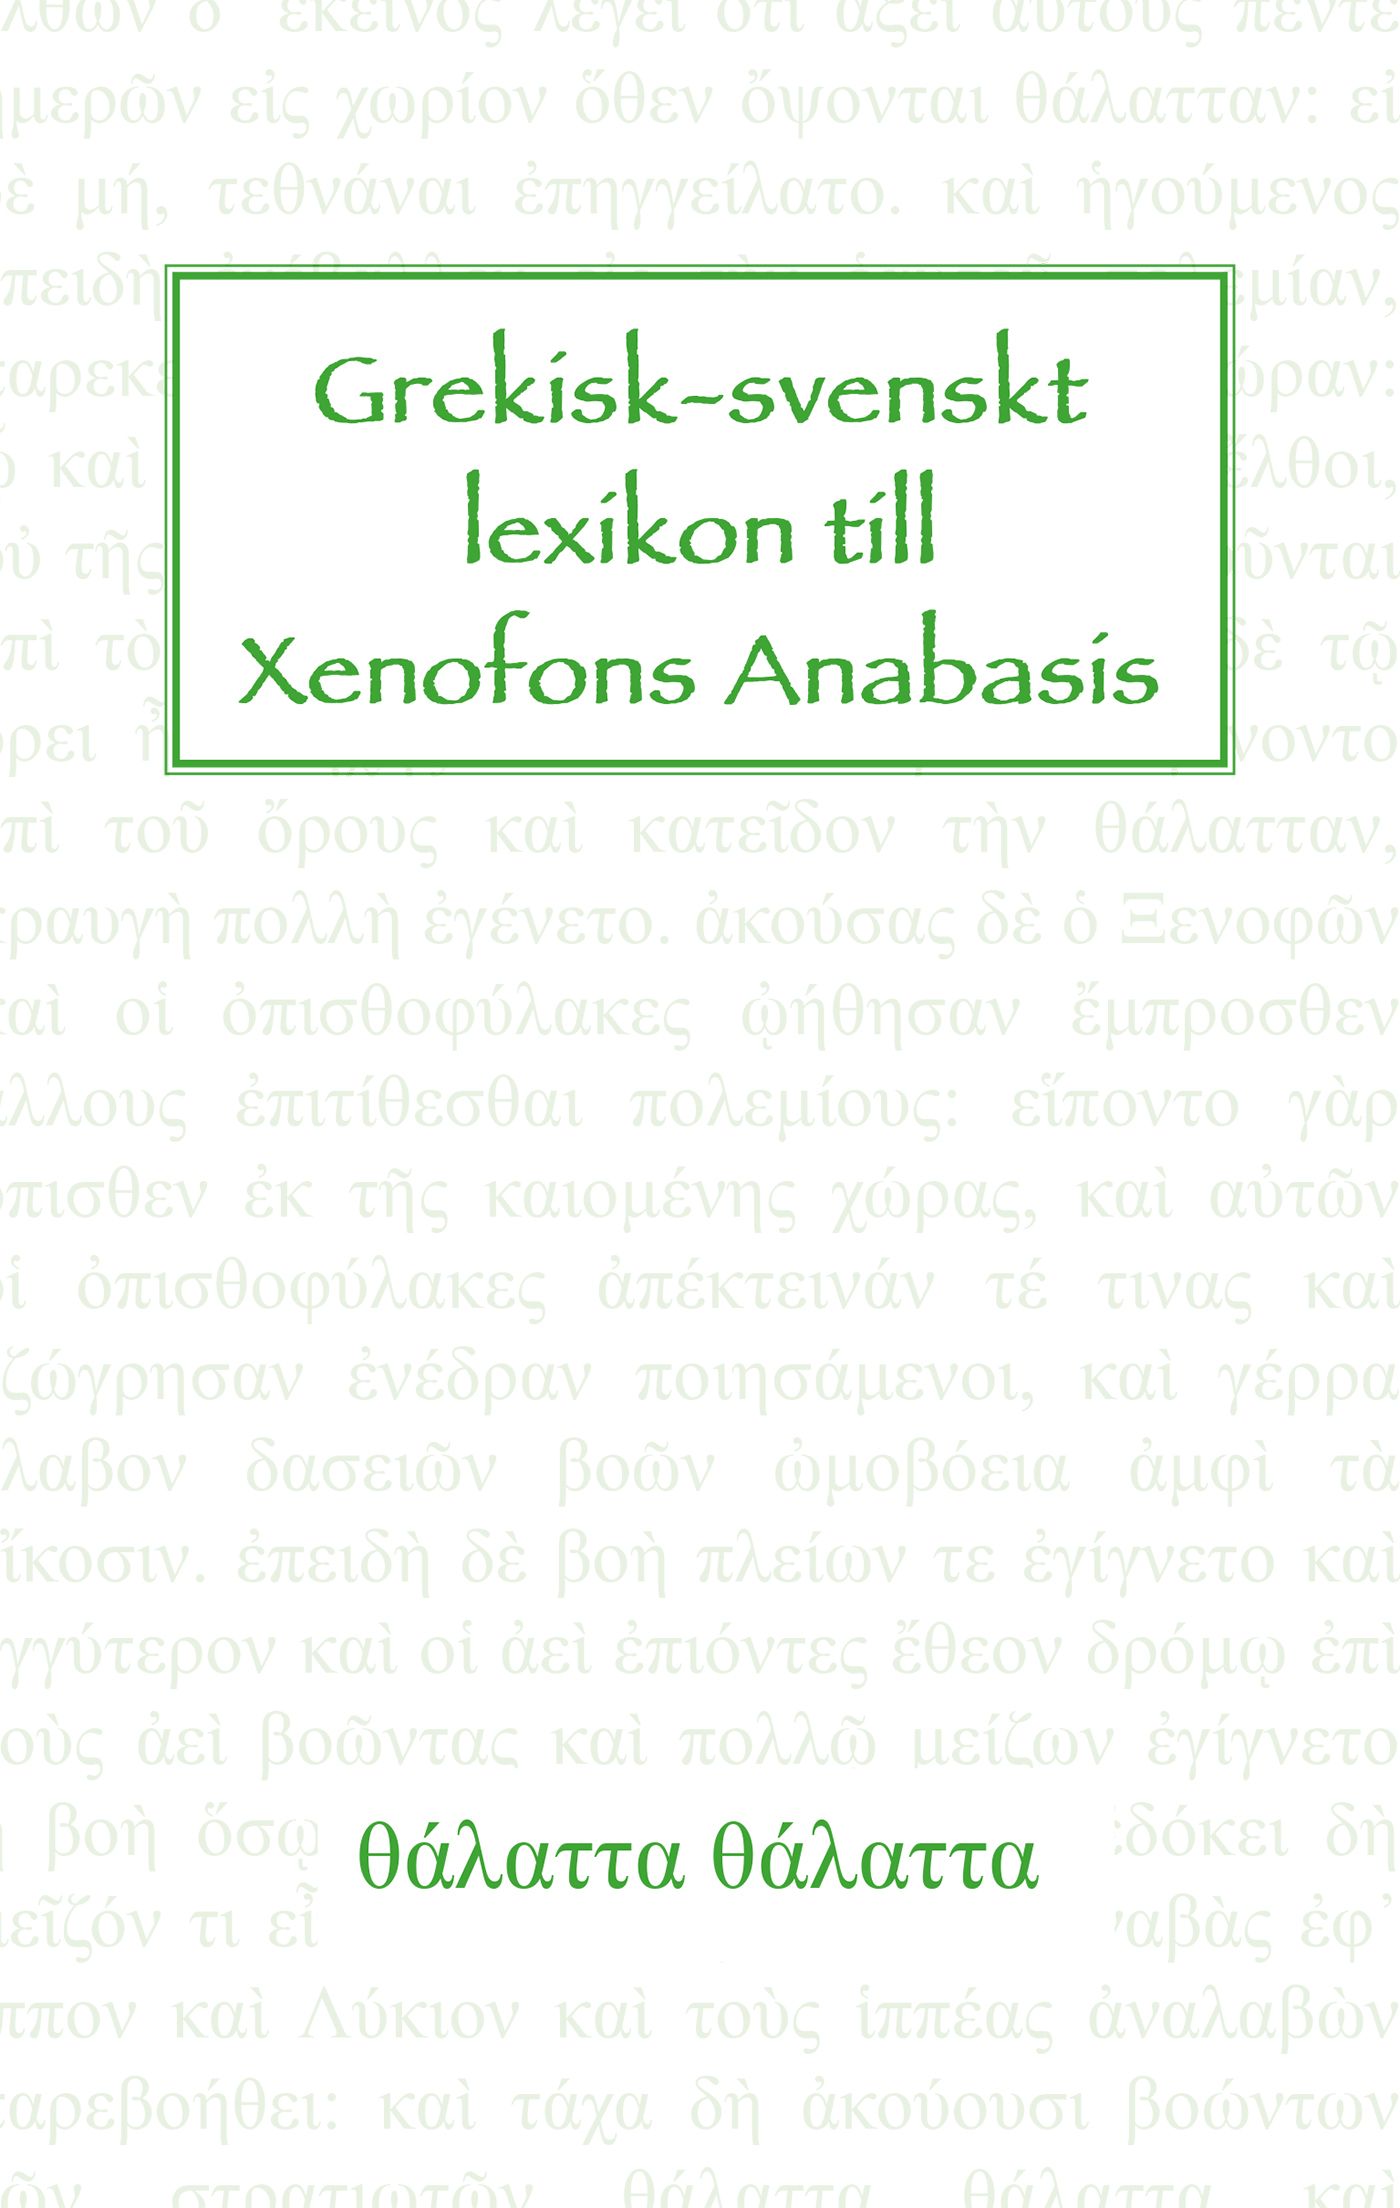 Grekisk-svenskt lexikon till Xenofons Anabasis, e-bok av L. A. A. Aulin